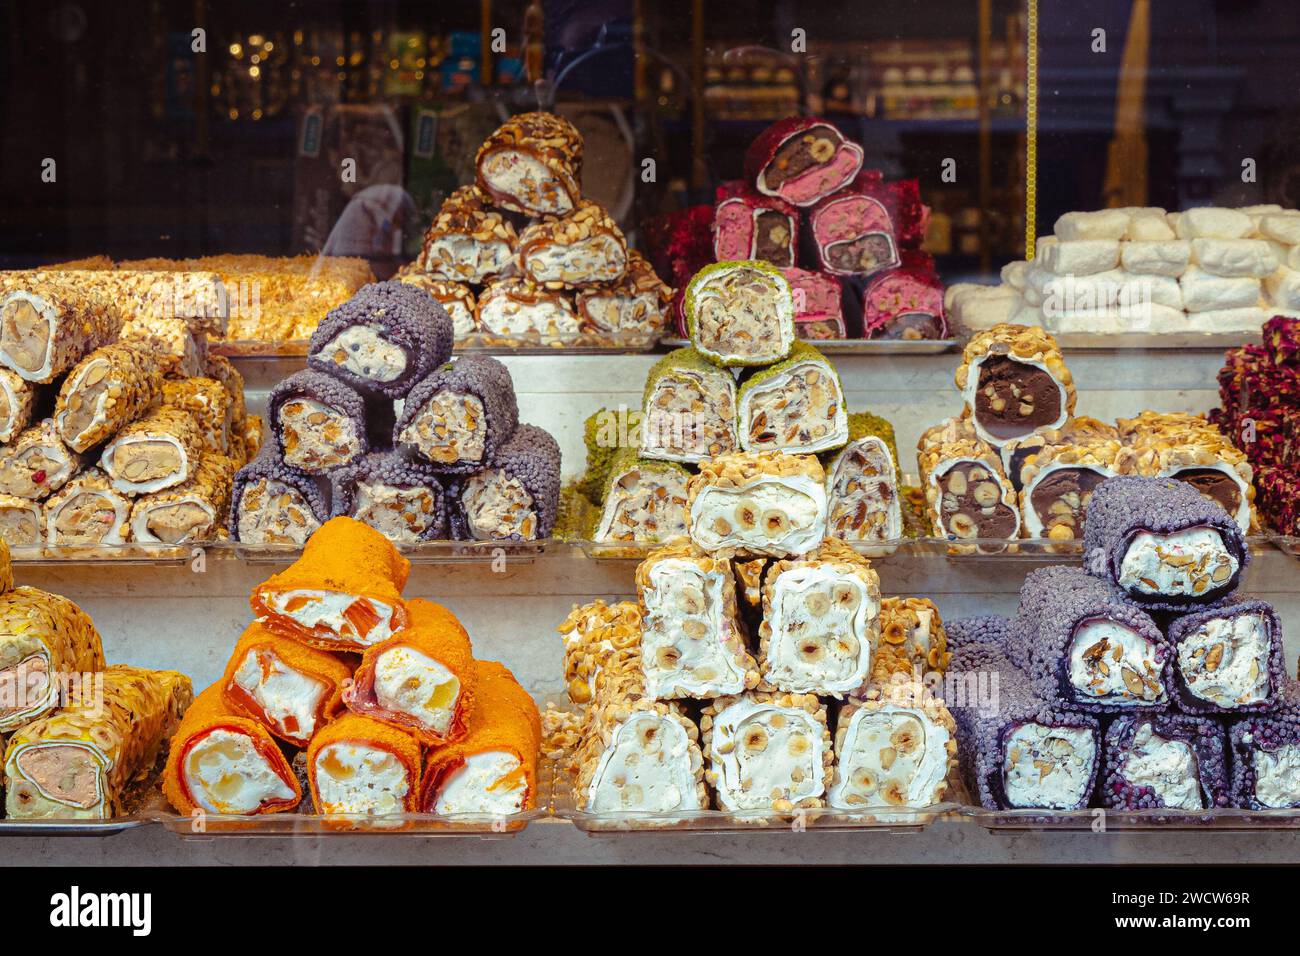 Türkische Köstlichkeiten (Lokum), traditionelle türkische Süßigkeiten, die in einem Geschäft auf dem Großen Basar in Istanbul, Türkei, ausgestellt werden Stockfoto